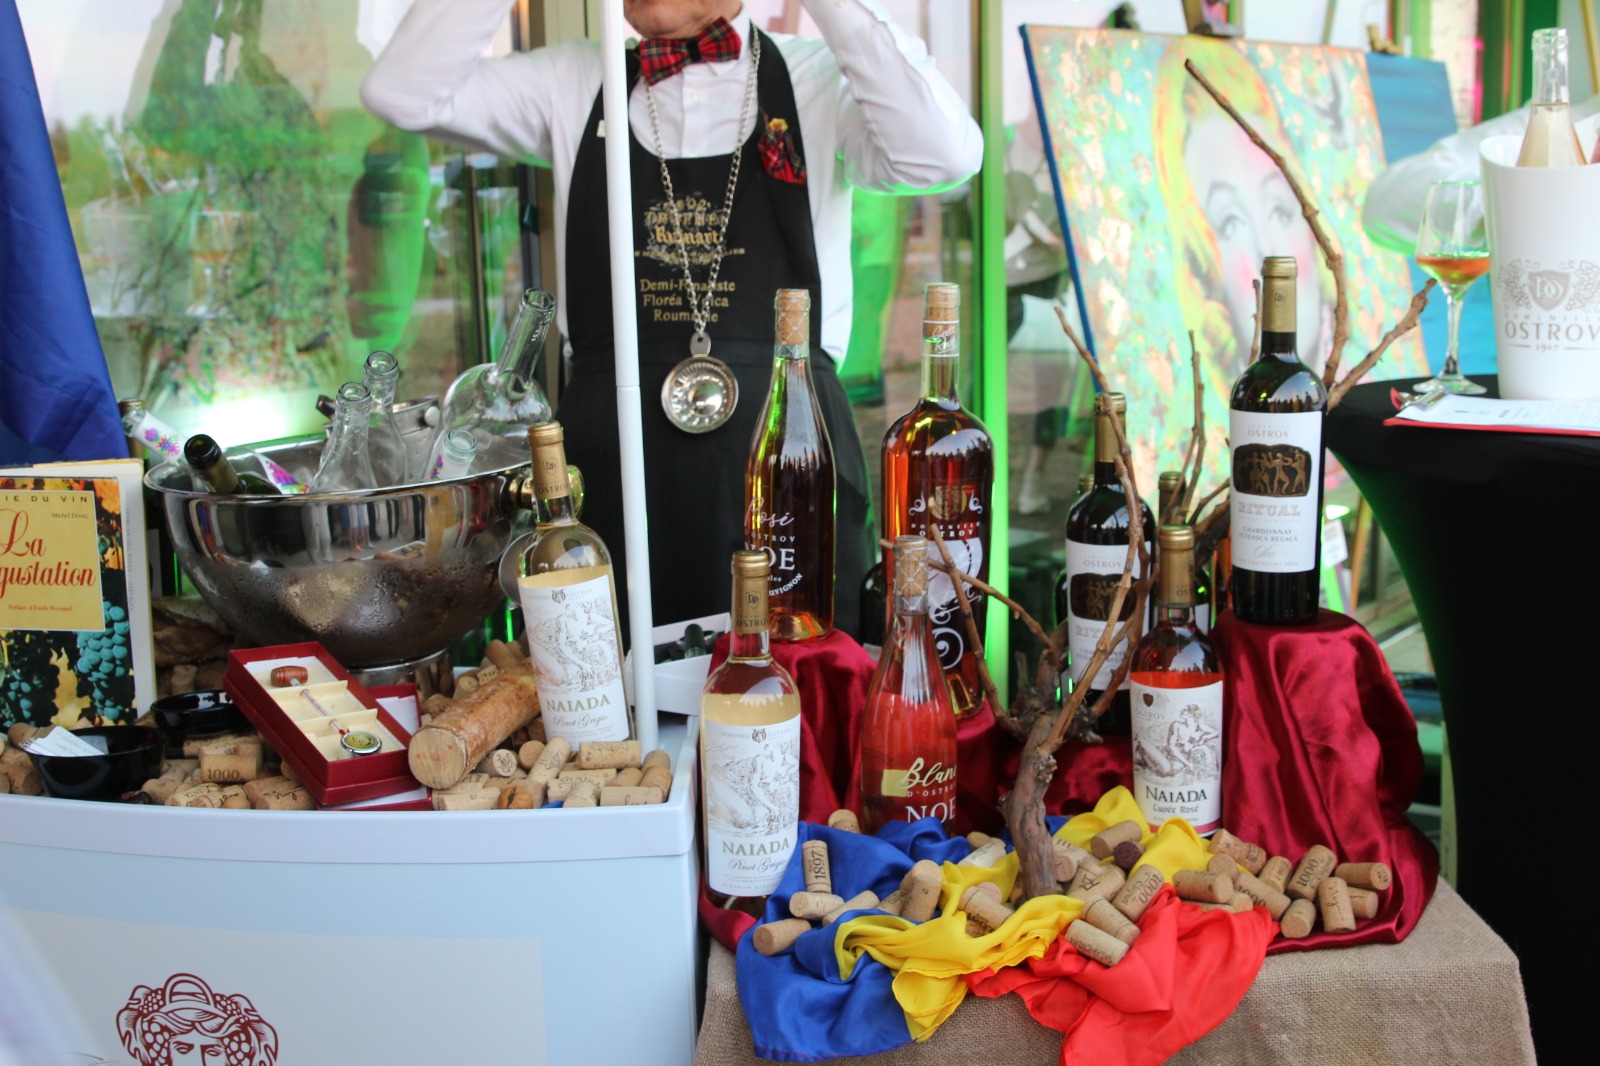 Domeniile Ostrov, lider pe segmentul vinului rose de calitate cu 1.2 milioane de litri vânduți în 2021